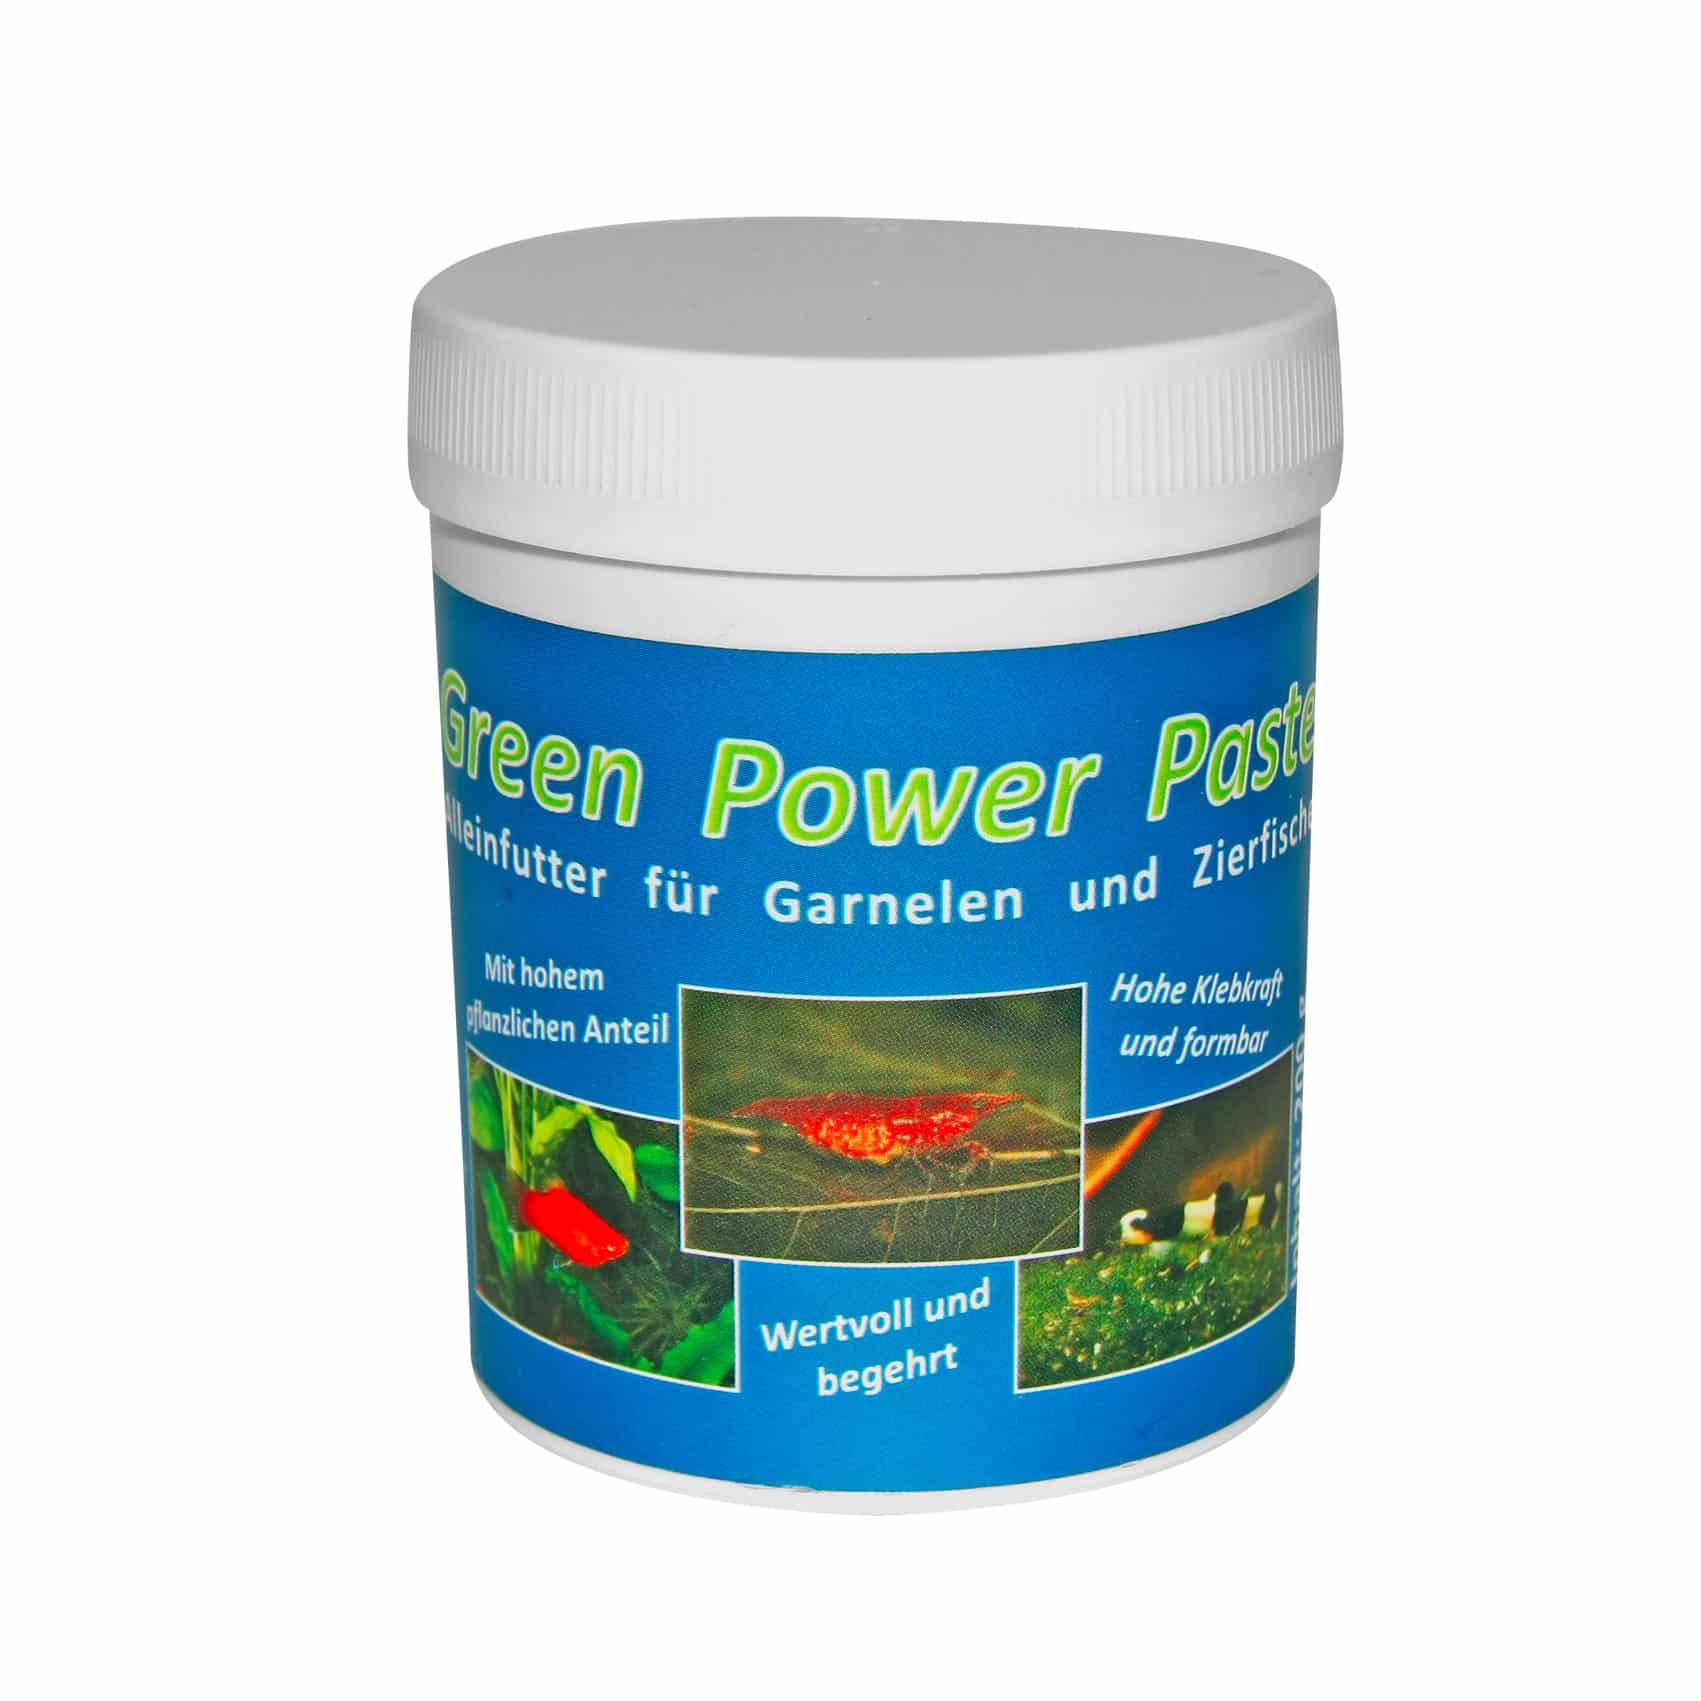 Green Power Paste 200g